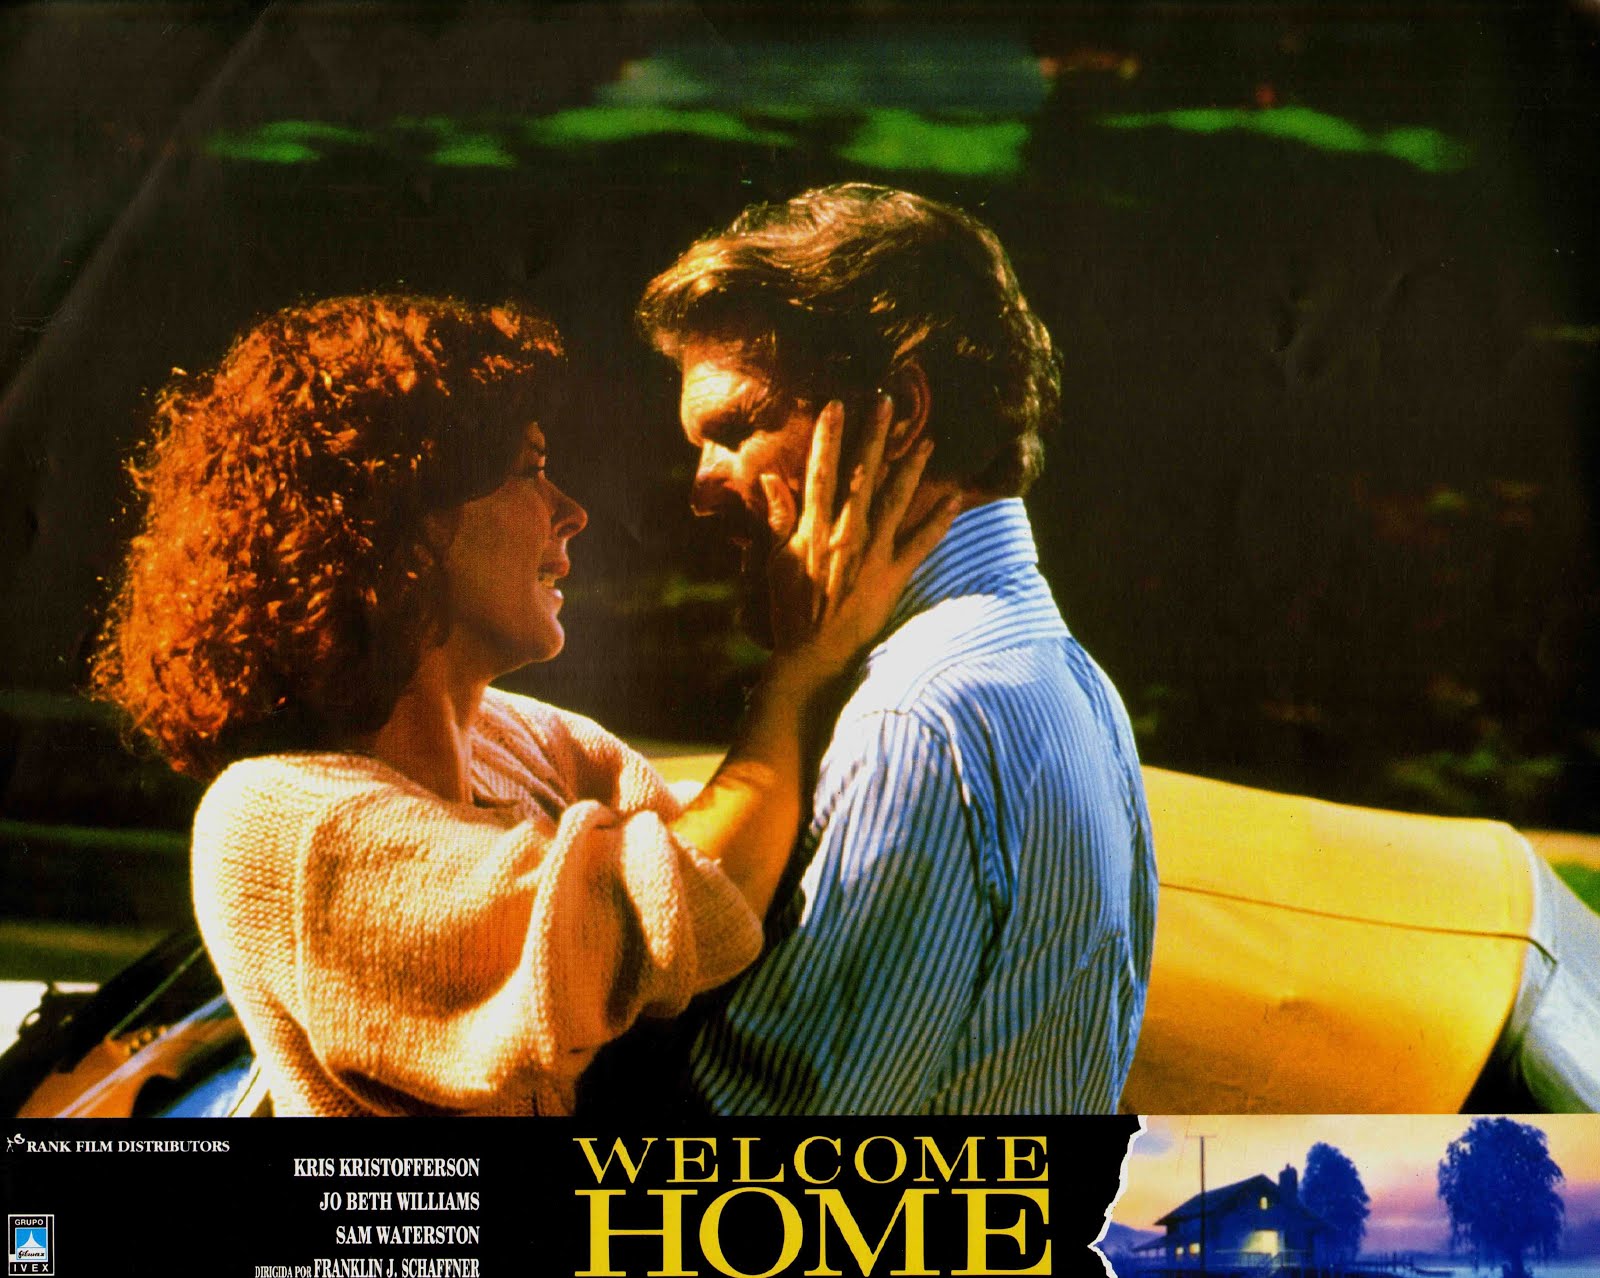 Welcome home (1988) Franklin J. Schaffner - (Inédit en France) (04.08.1988 / 10.1988)